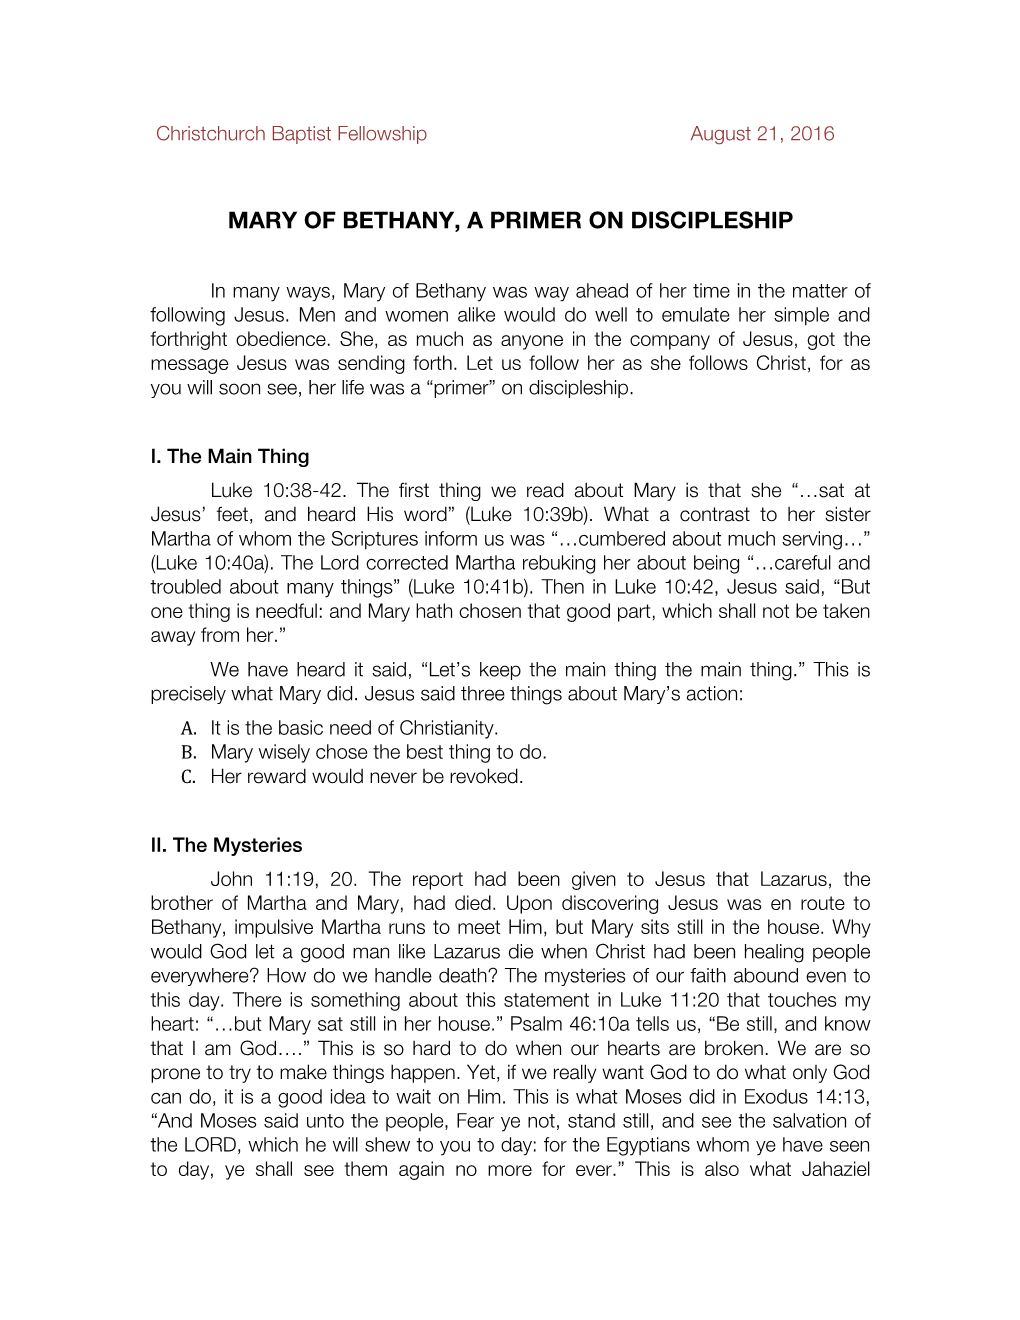 Mary of Bethany, a Primer on Discipleship